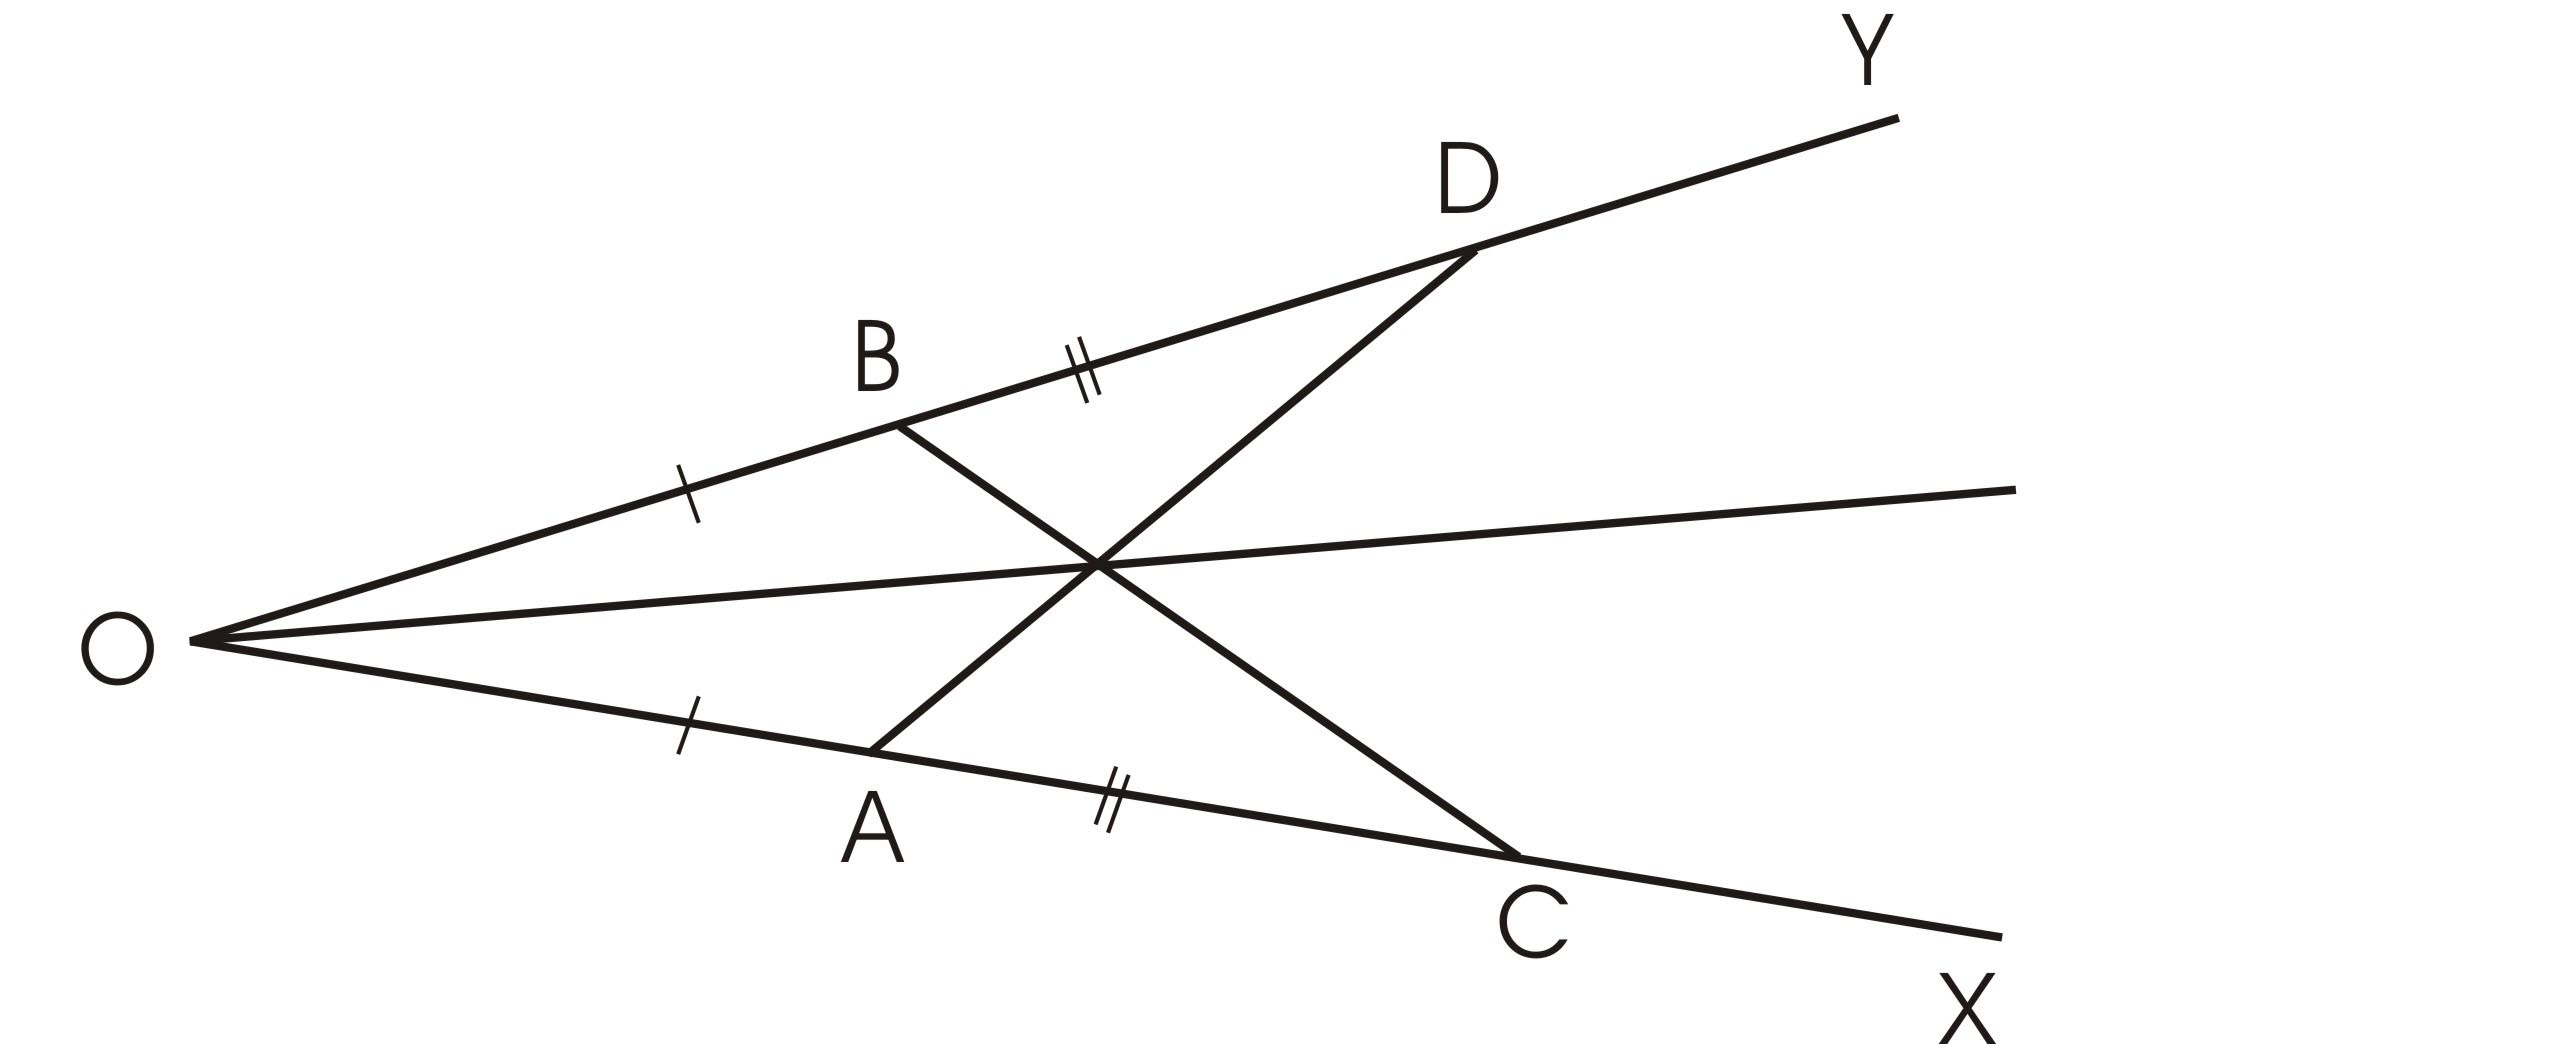 Конспект урока по геометрии для учащихся 7 класса «Признаки равенства треугольников»